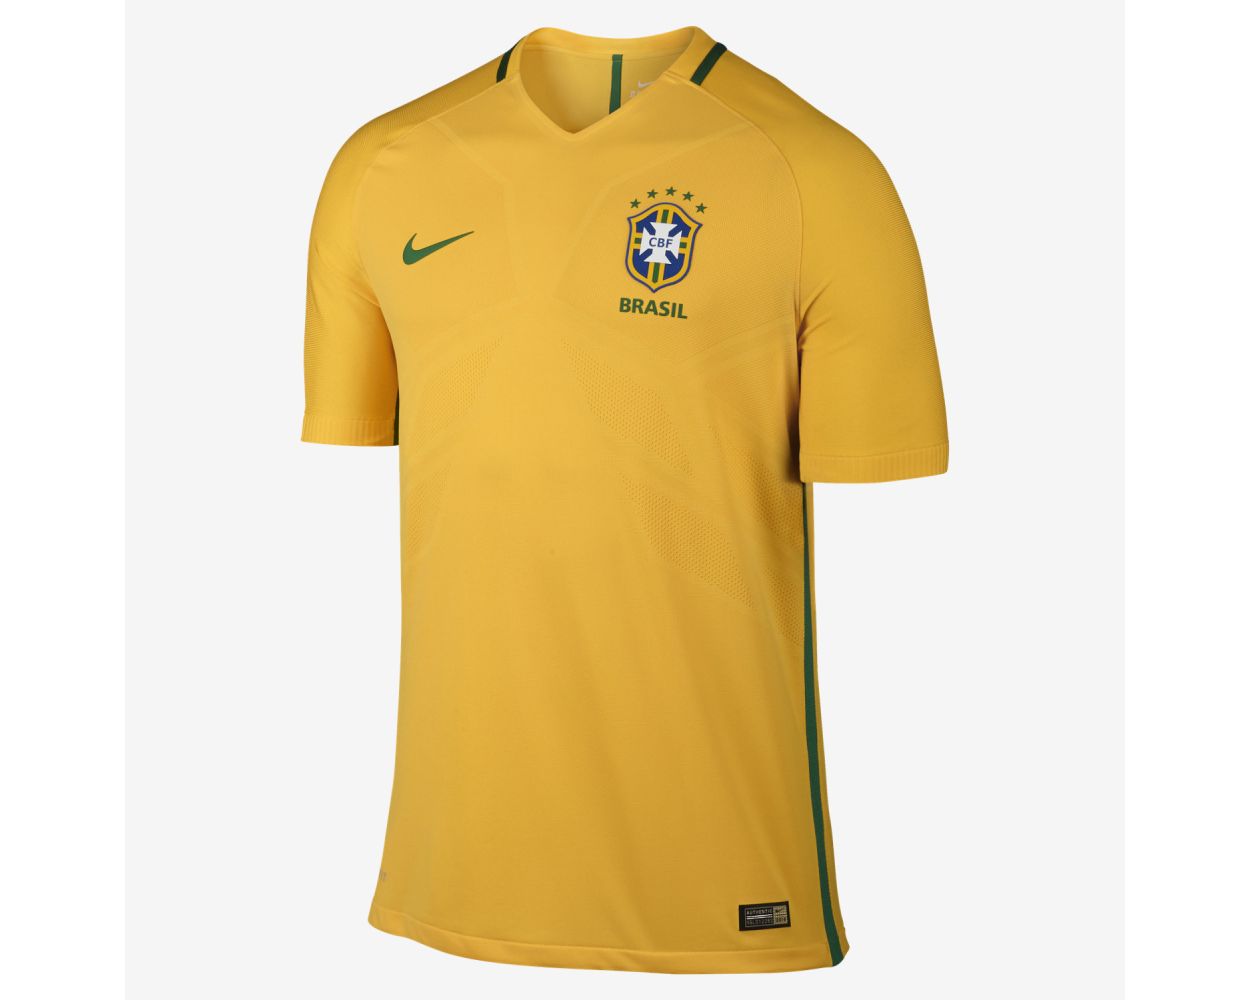 Vintage Brazil Soccer Jersey Brasil Nike – Glorydays Fine Goods